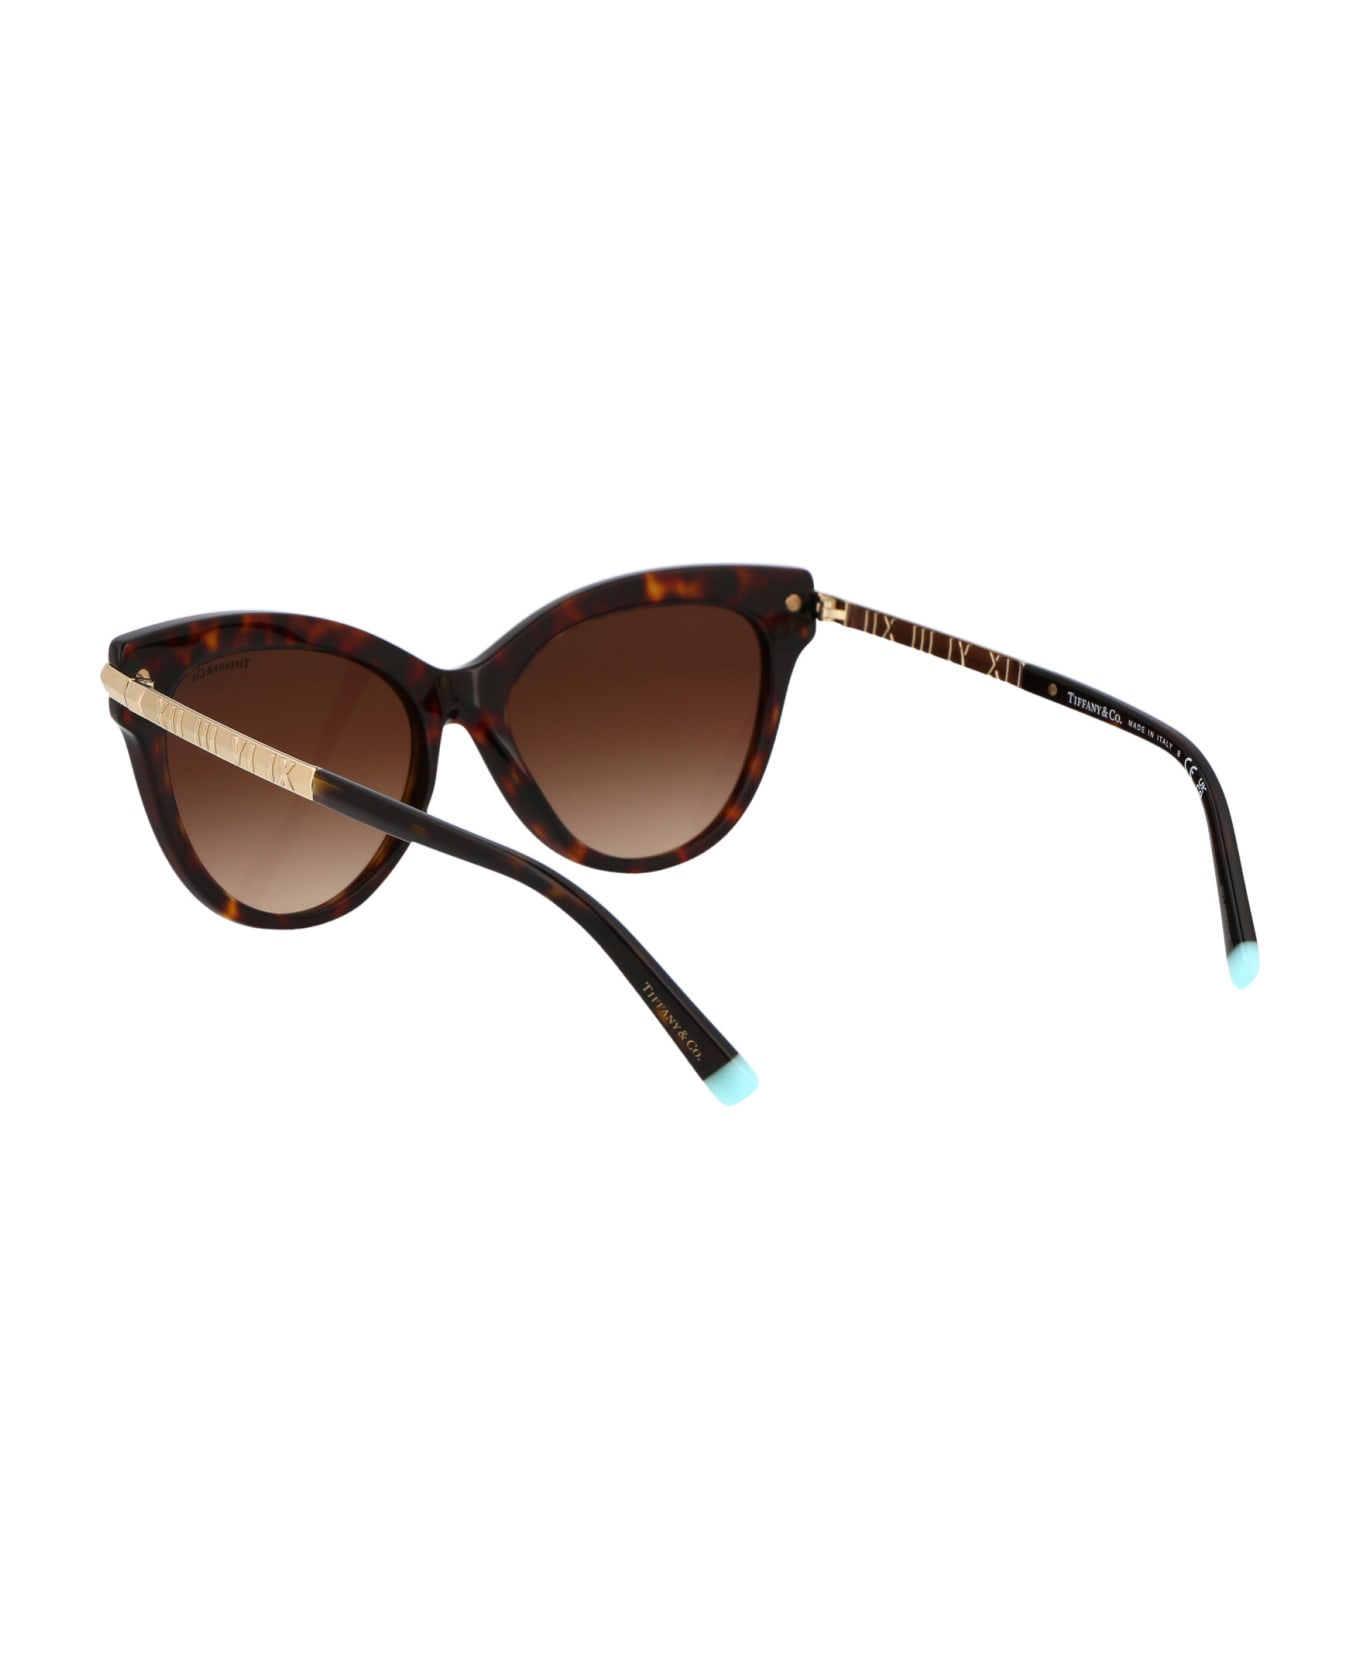 Tiffany & Co. 0tf4182 Sunglasses - 80153B Havana